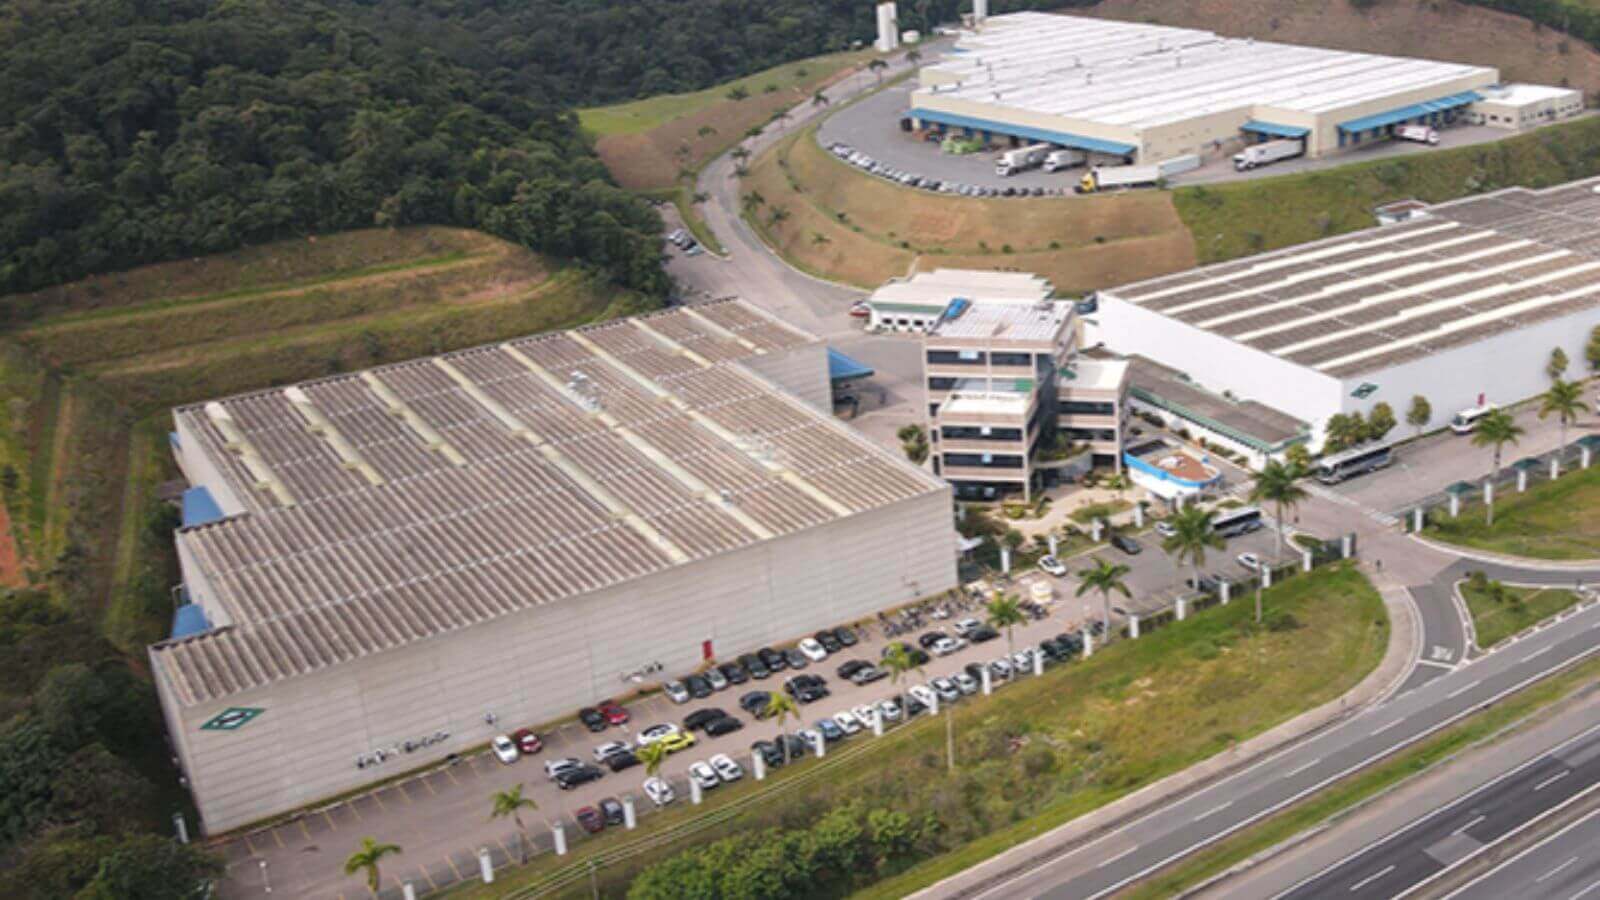 A imagem mostra uma vista aérea de um complexo industrial cercado por áreas verdes e uma estrada.